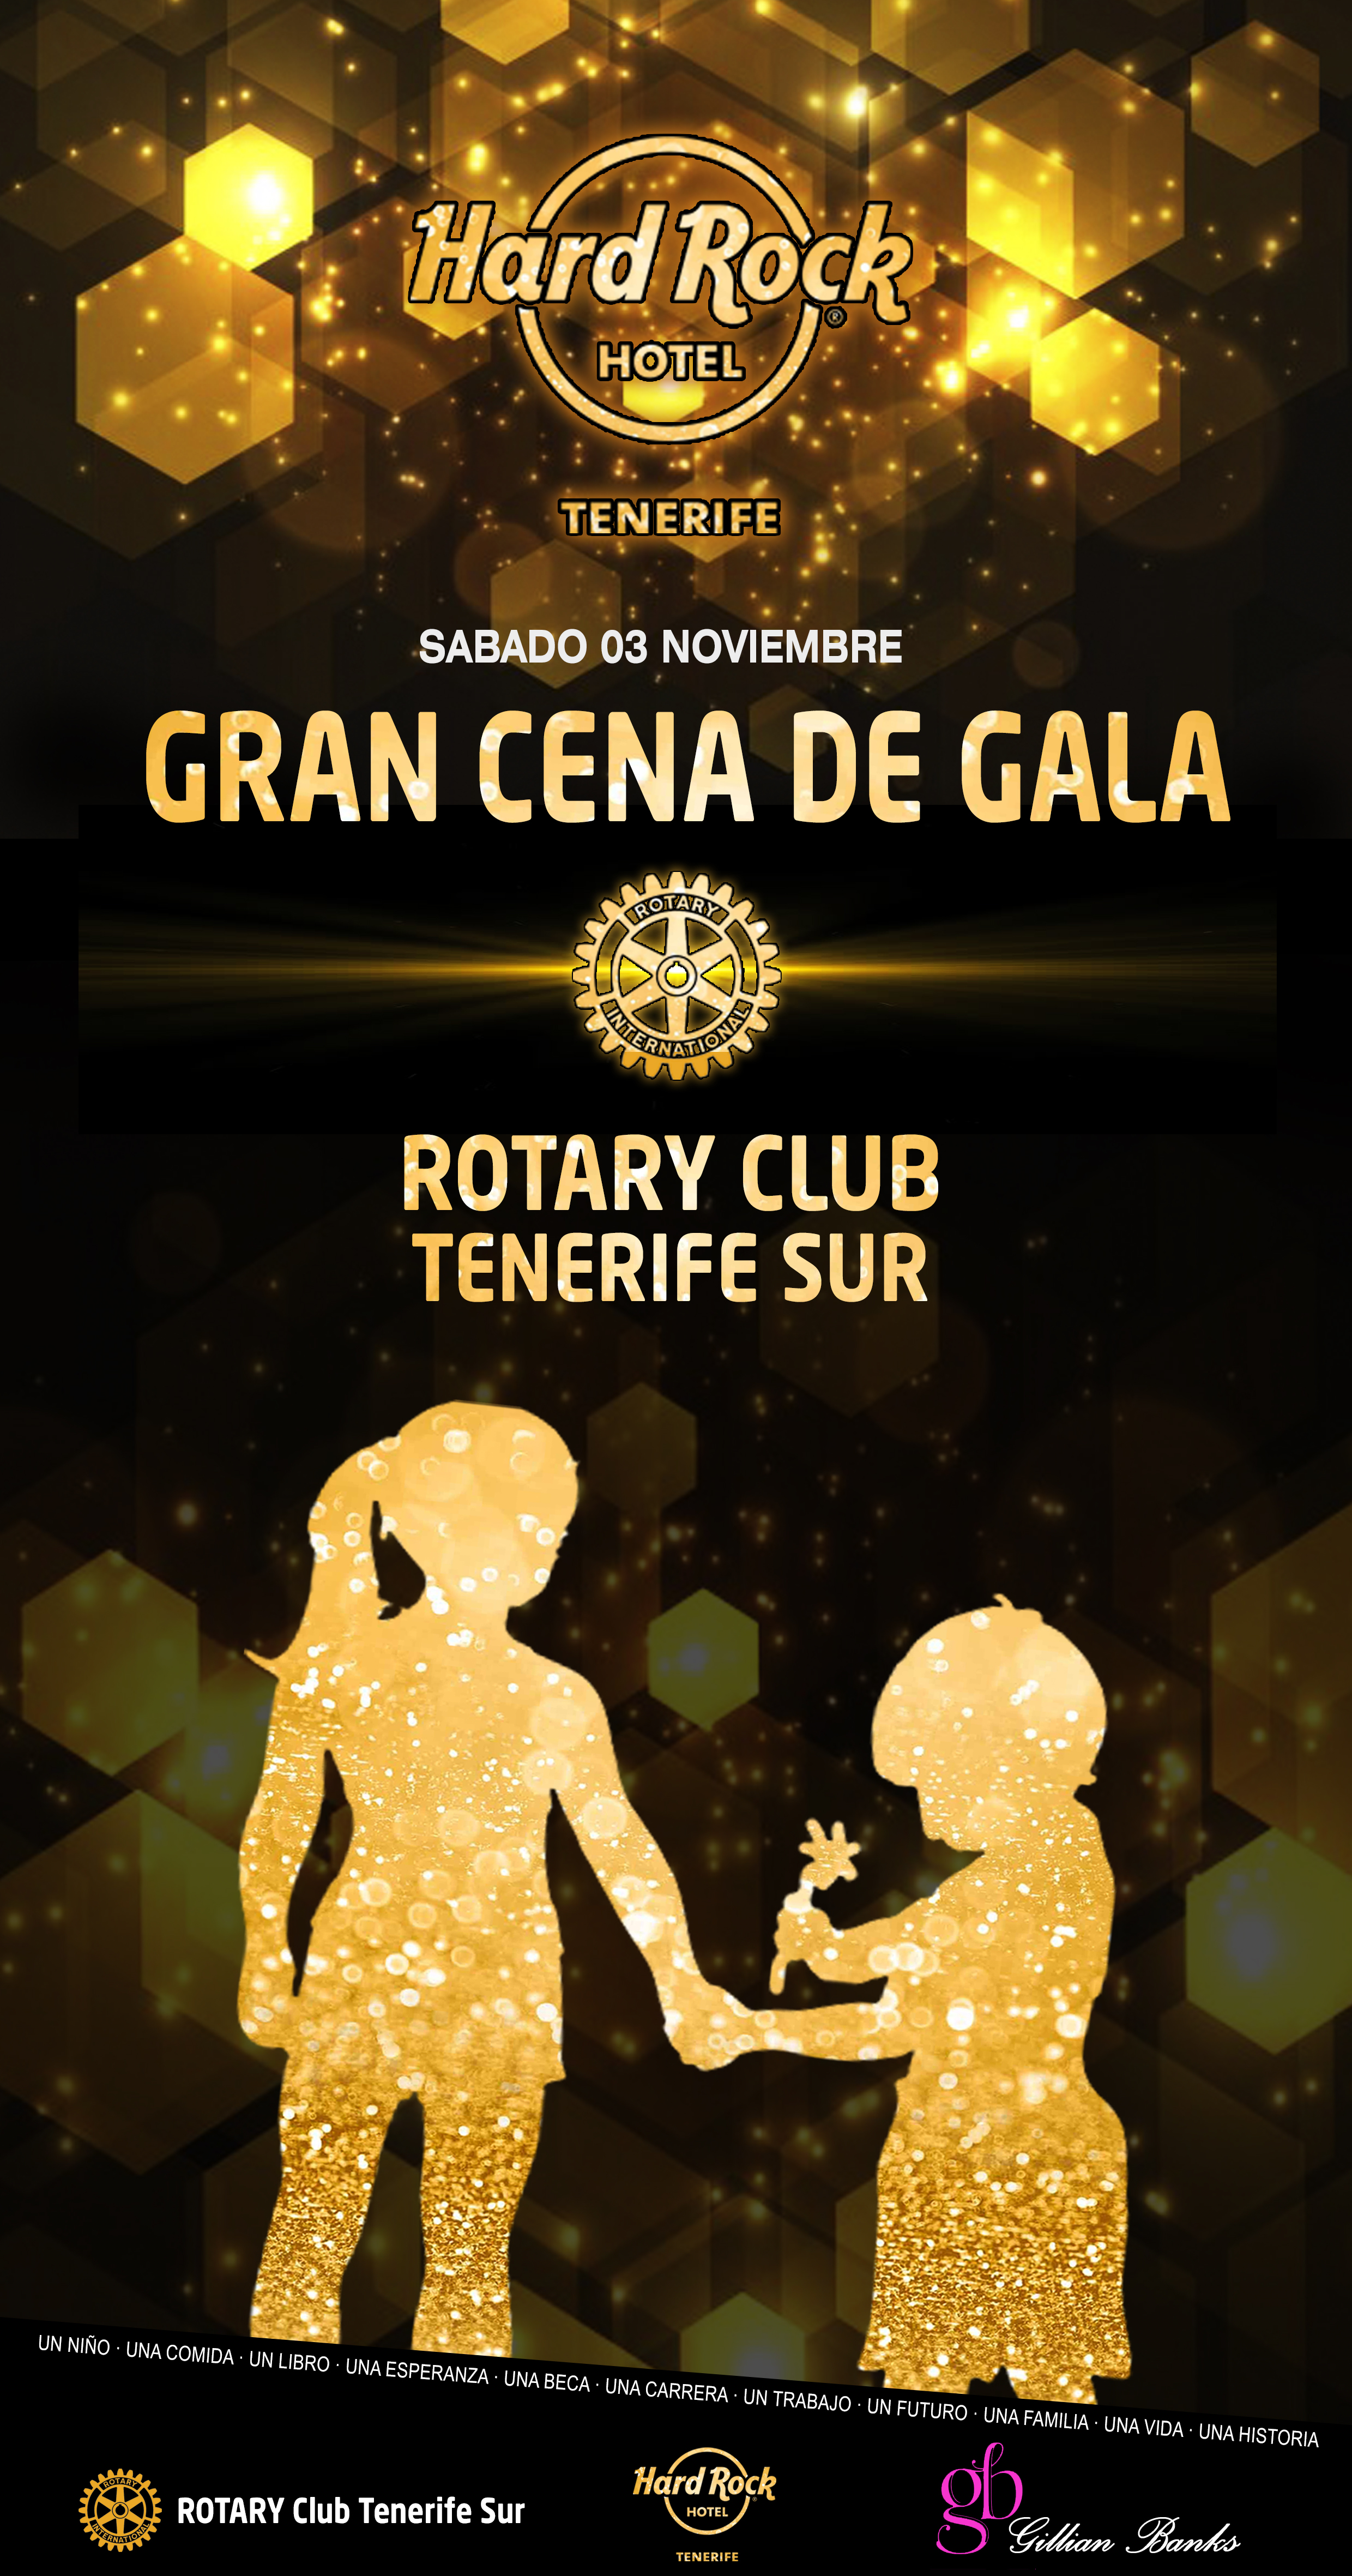 La campaña del Rotary Club Tenerife Sur «Un Niño una Comida Un Libro» 2018-2019 concluye con una aportación cercana a los 30.000€